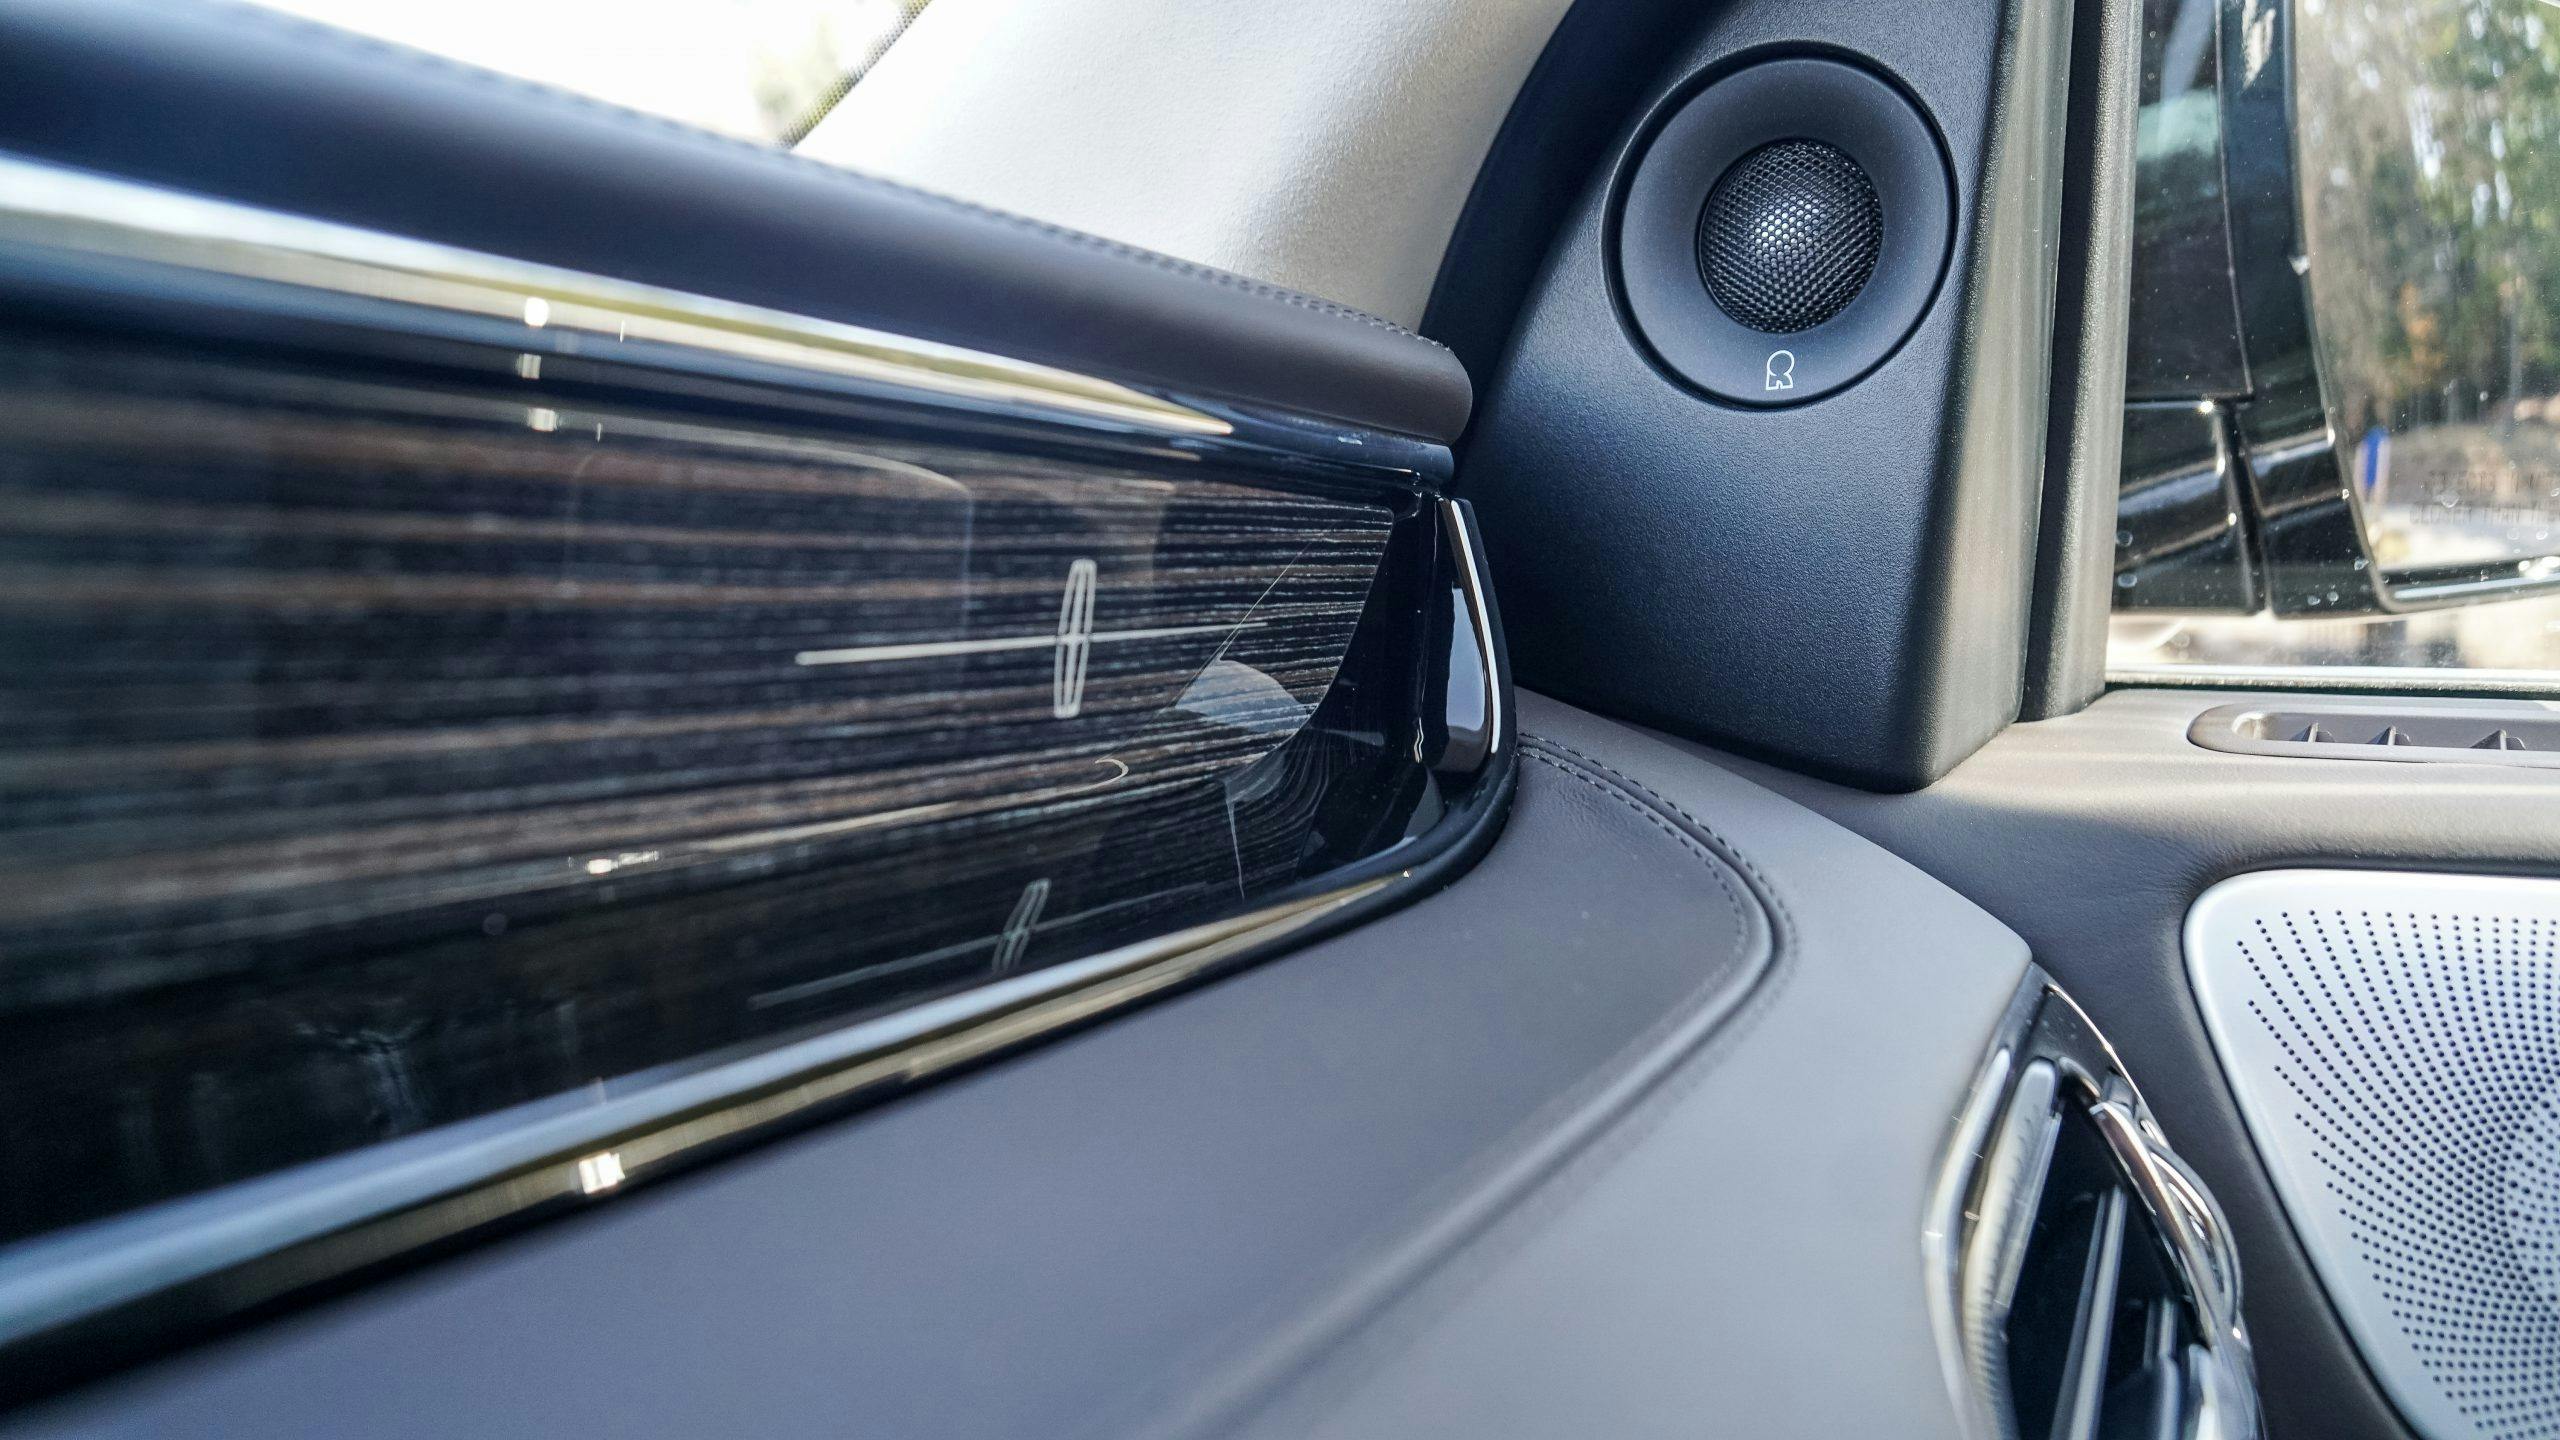 2021 Lincoln Navigator 4×4 Black Label interior trim details